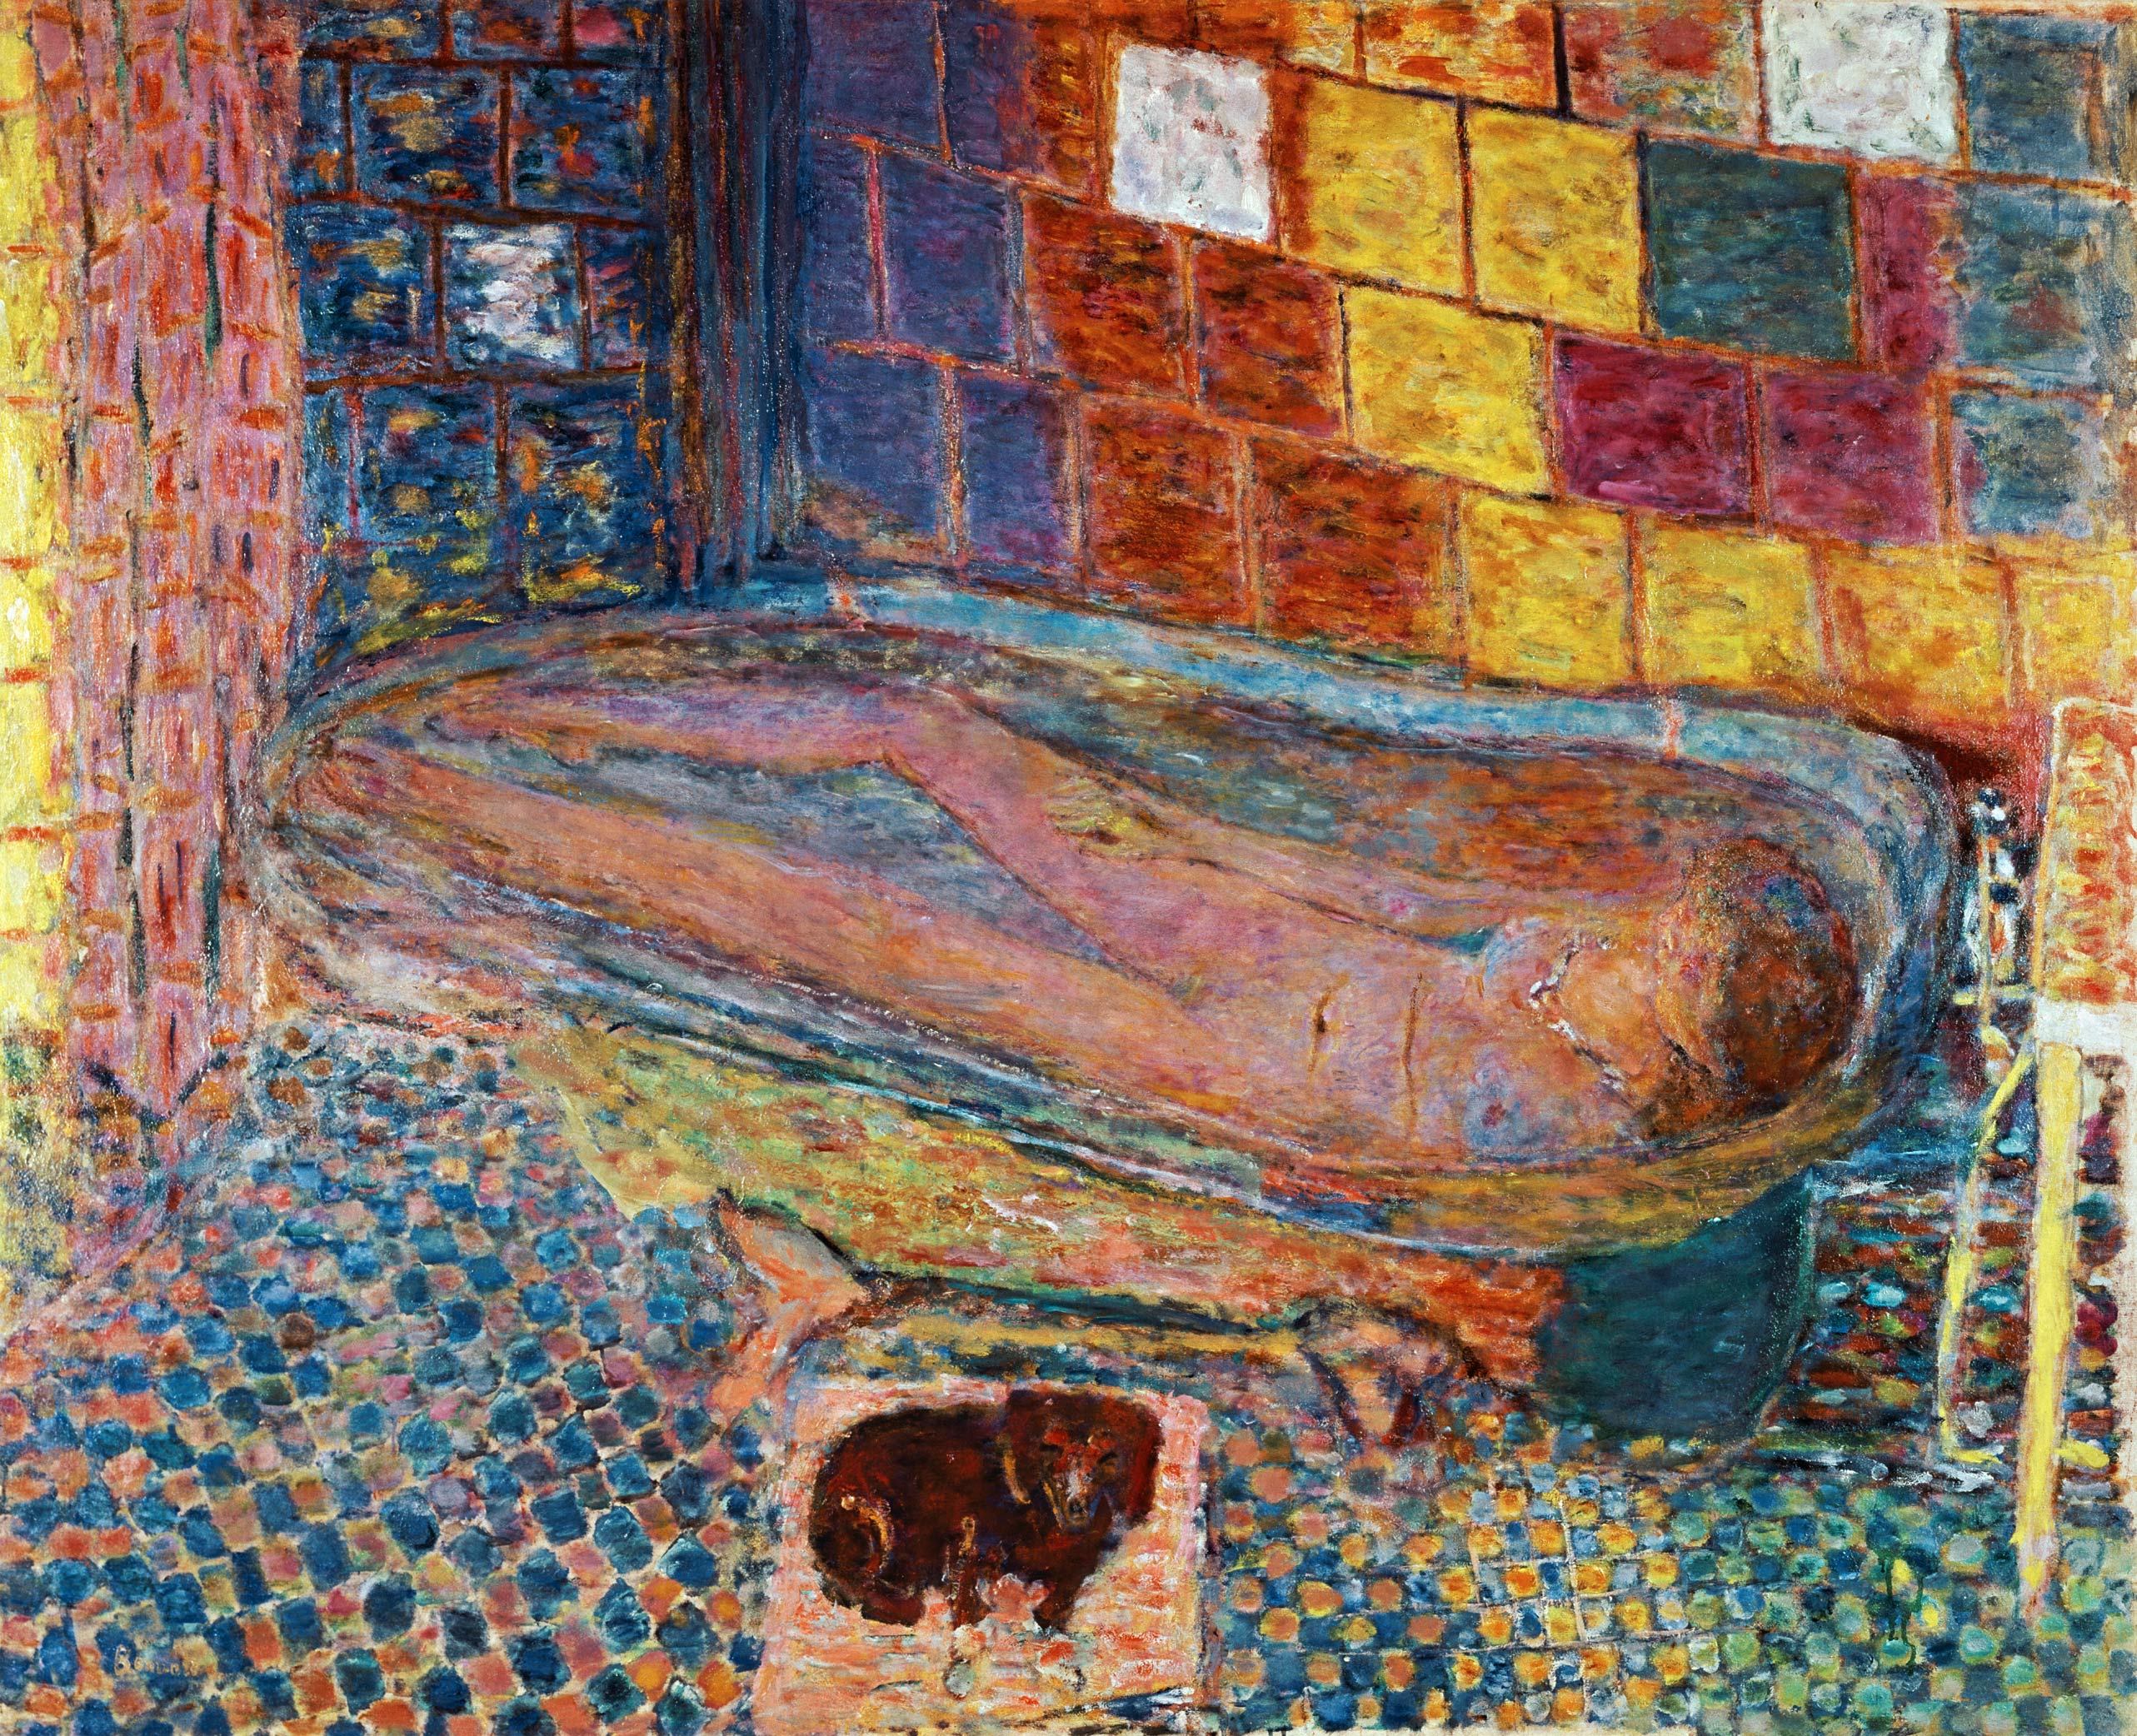 In the bathtub from Pierre Bonnard